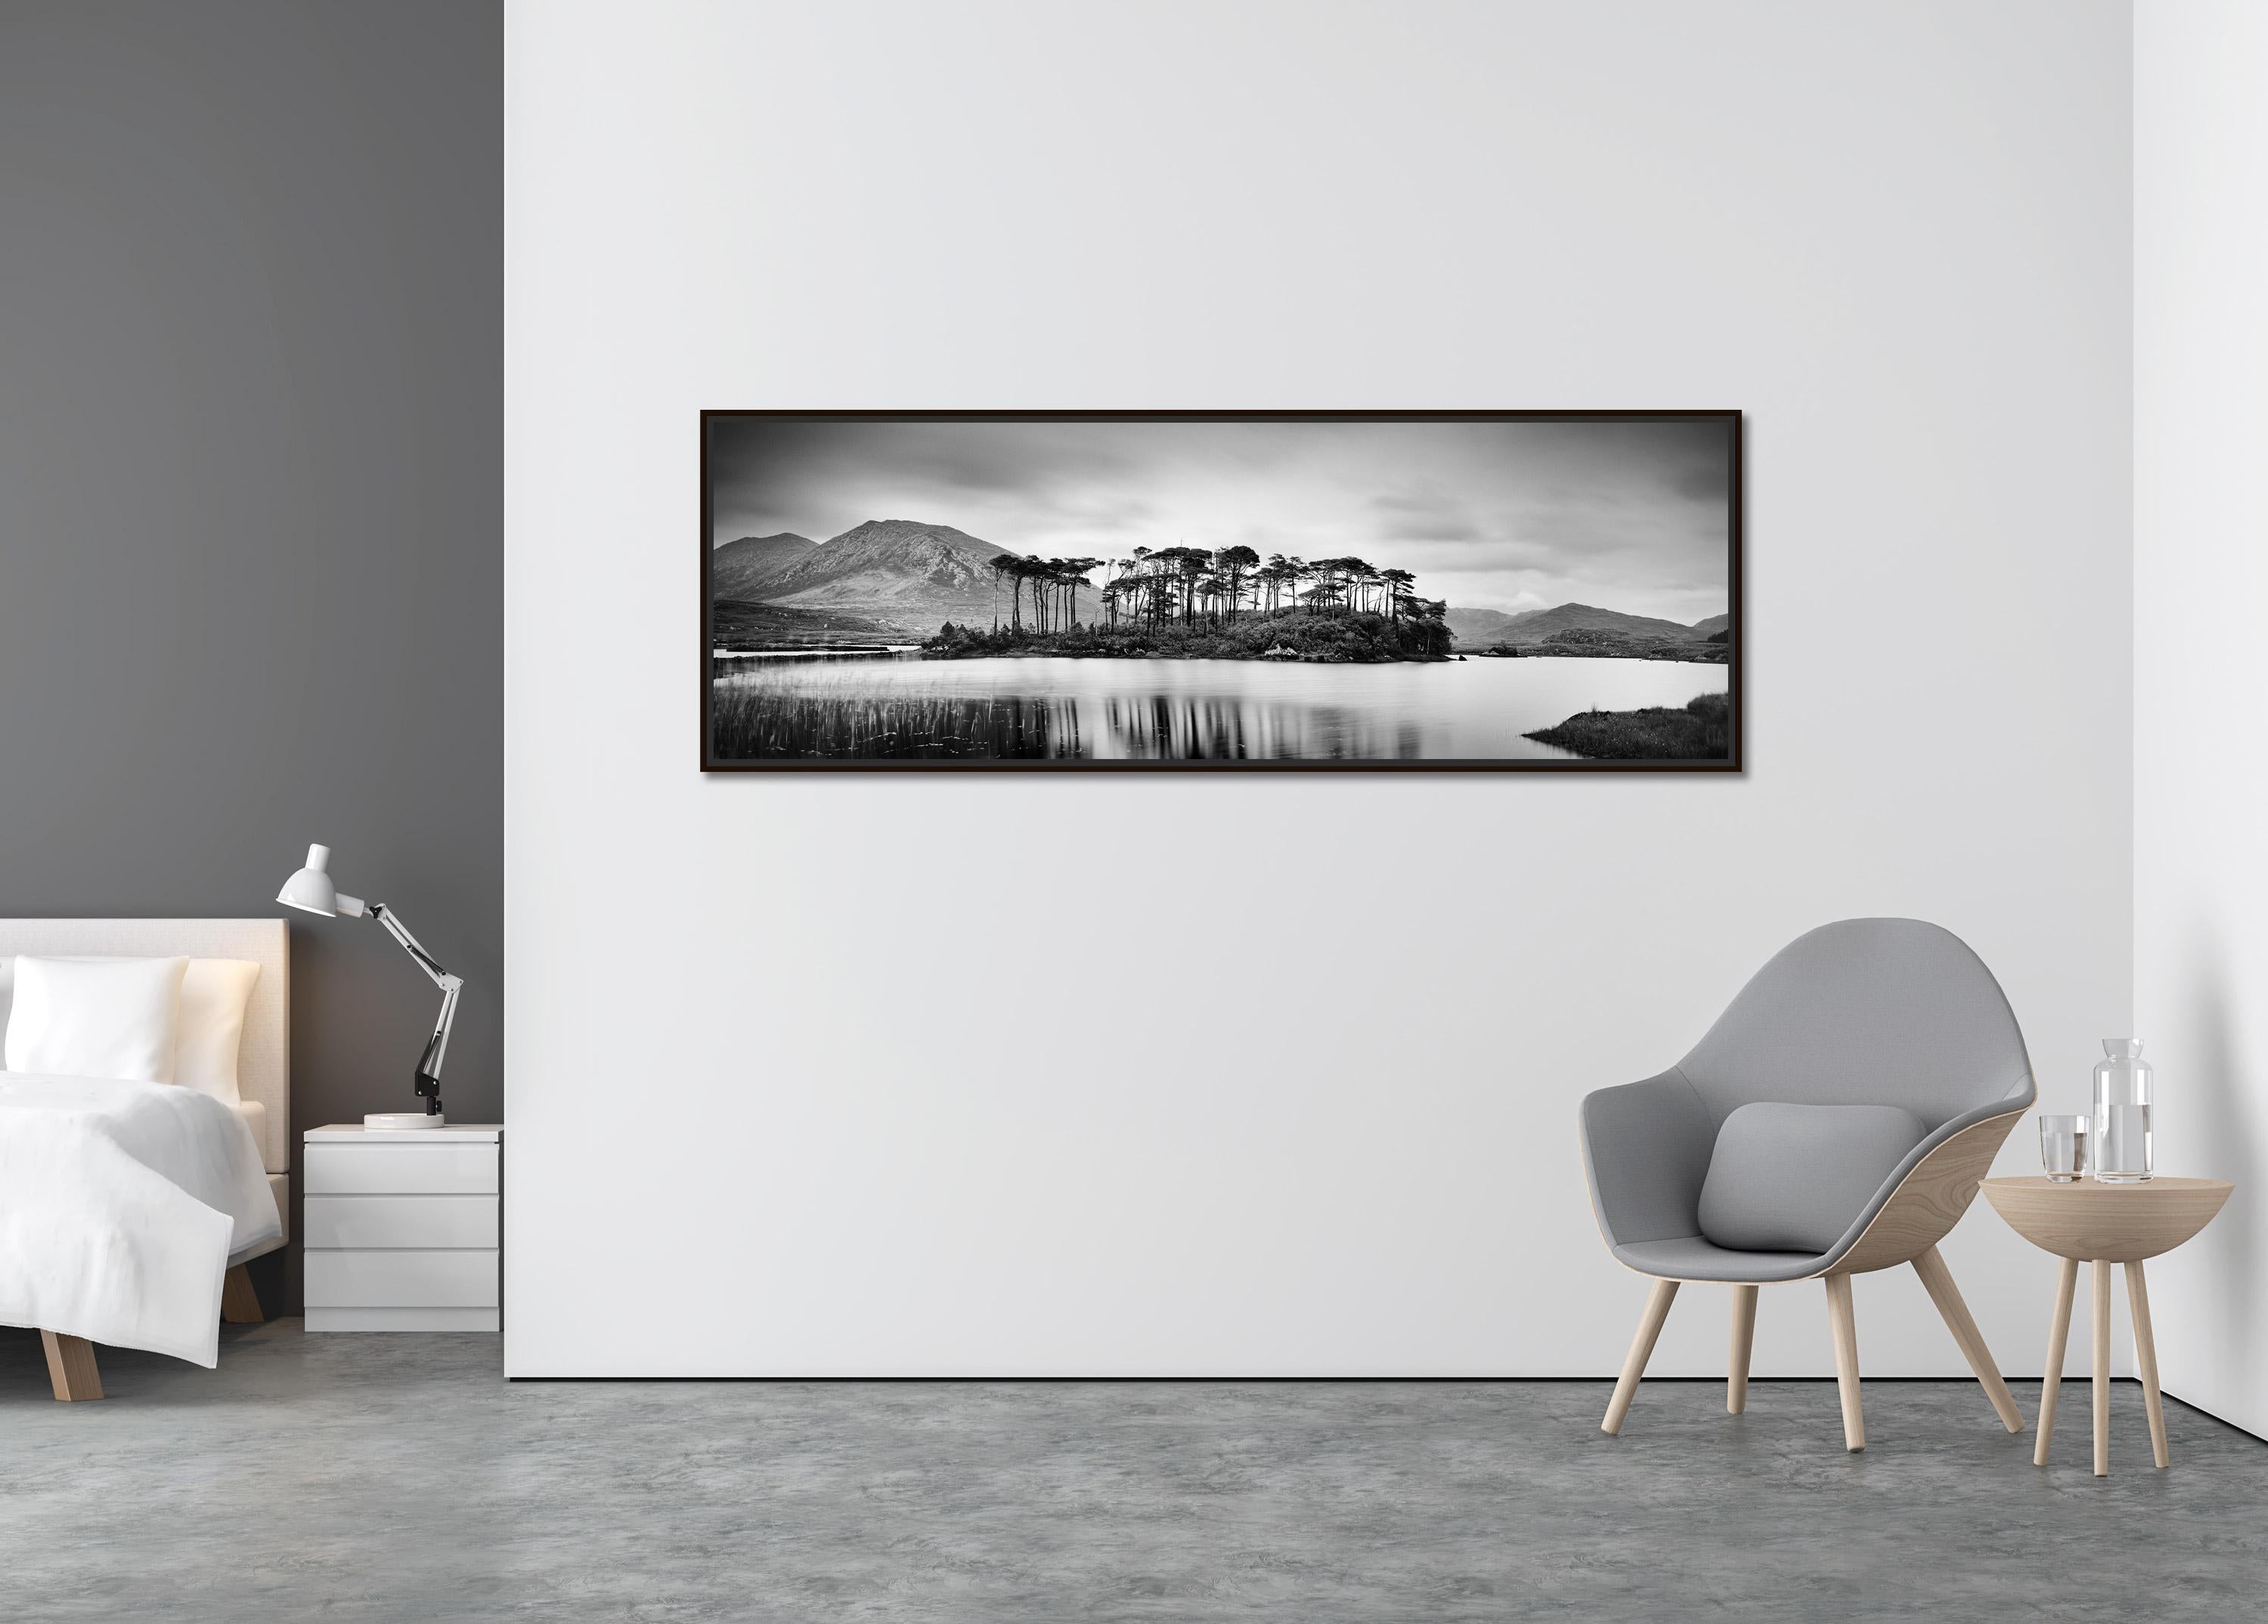 Bauminsel Panorama, zeitgenössischer Schwarz-Weiß-Fotodruck mit Wasserlandschaft (Zeitgenössisch), Photograph, von Gerald Berghammer